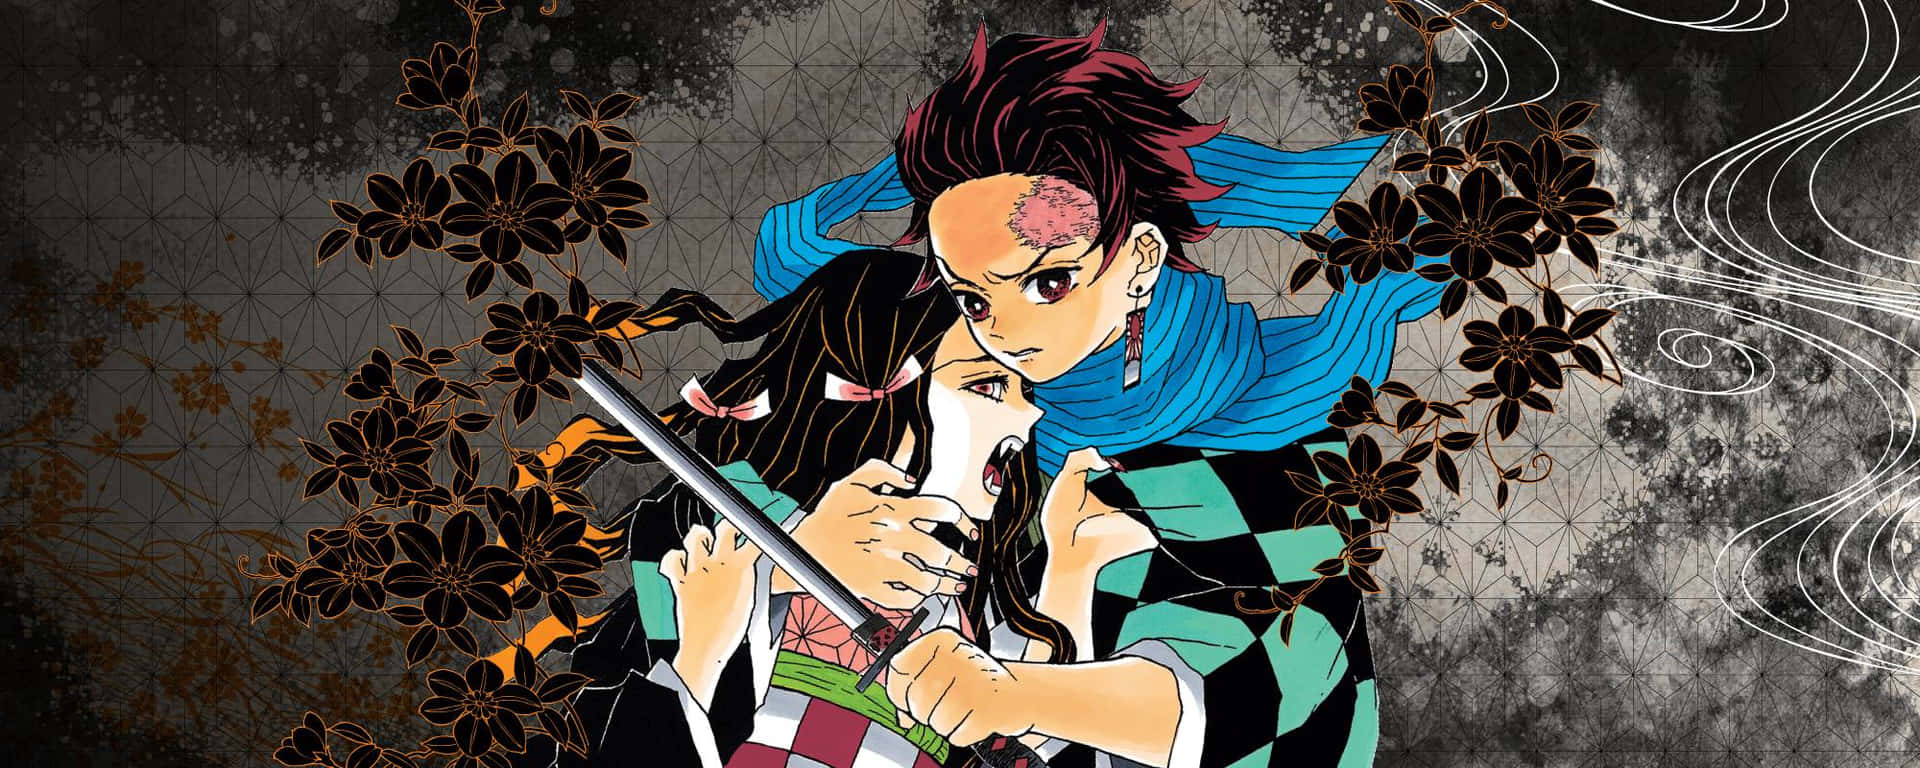 Únetea Tanjiro Y Sus Amigos En Su Misión Para Salvar A Nezuko En El Manga De Demon Slayer Fondo de pantalla